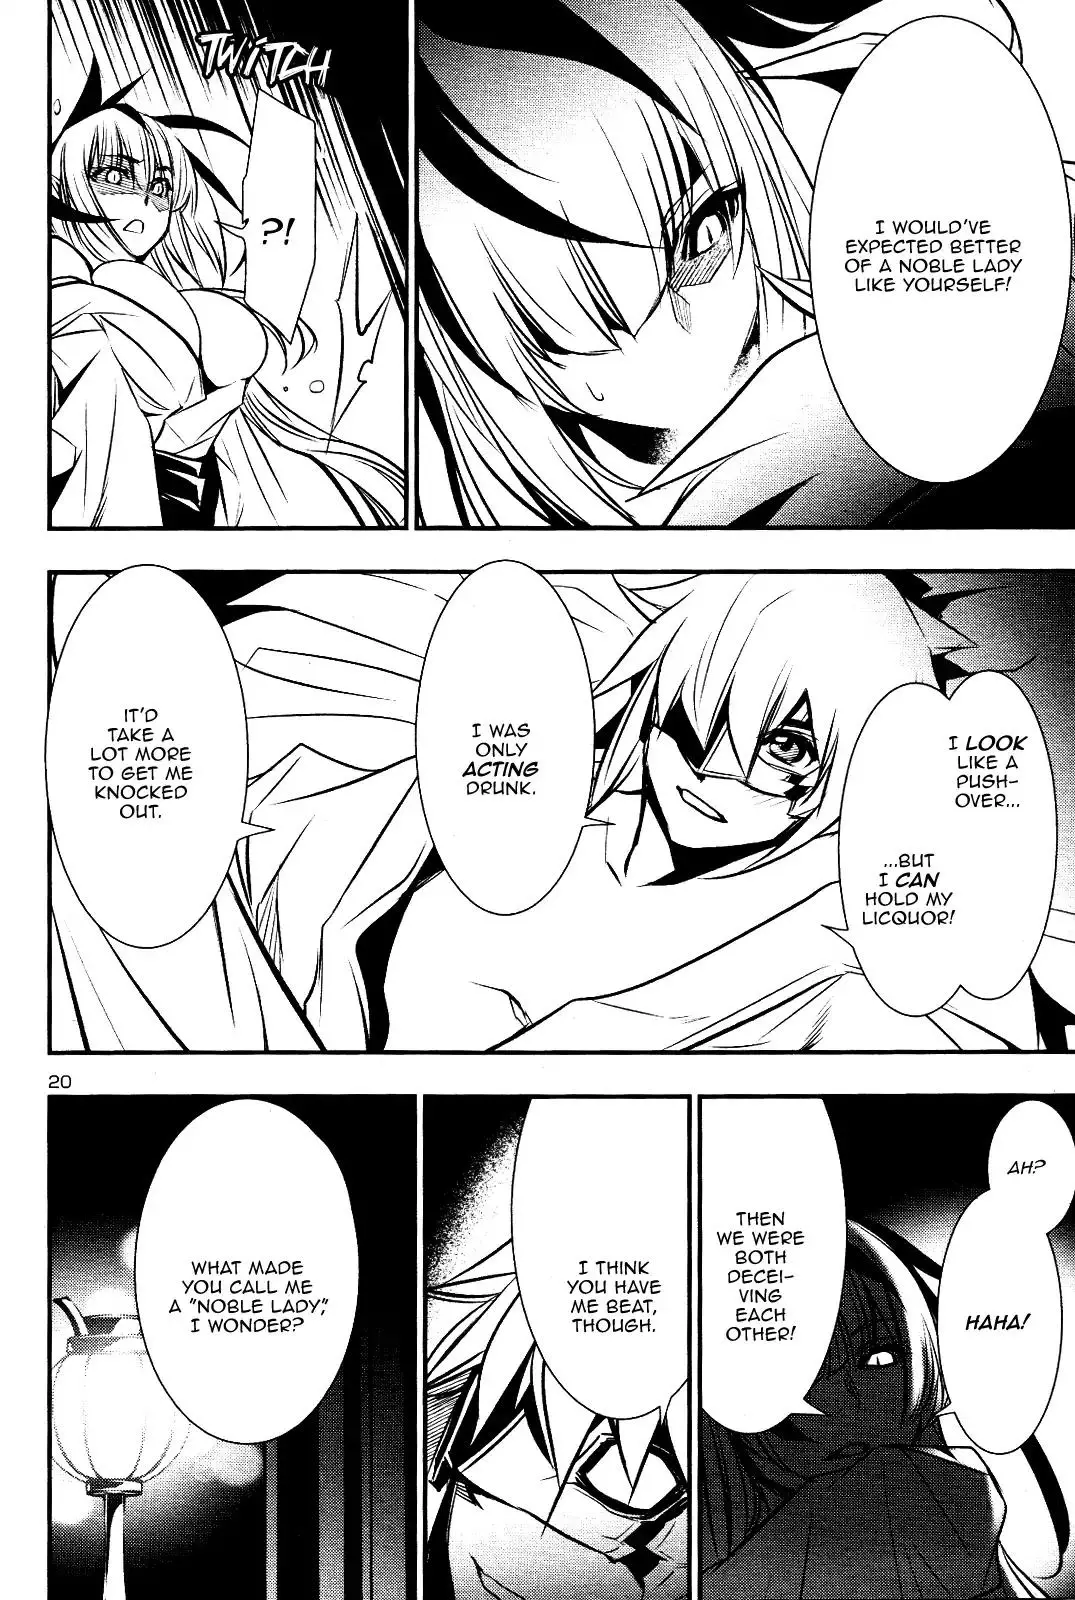 Shinju no Nectar - 25 page 18